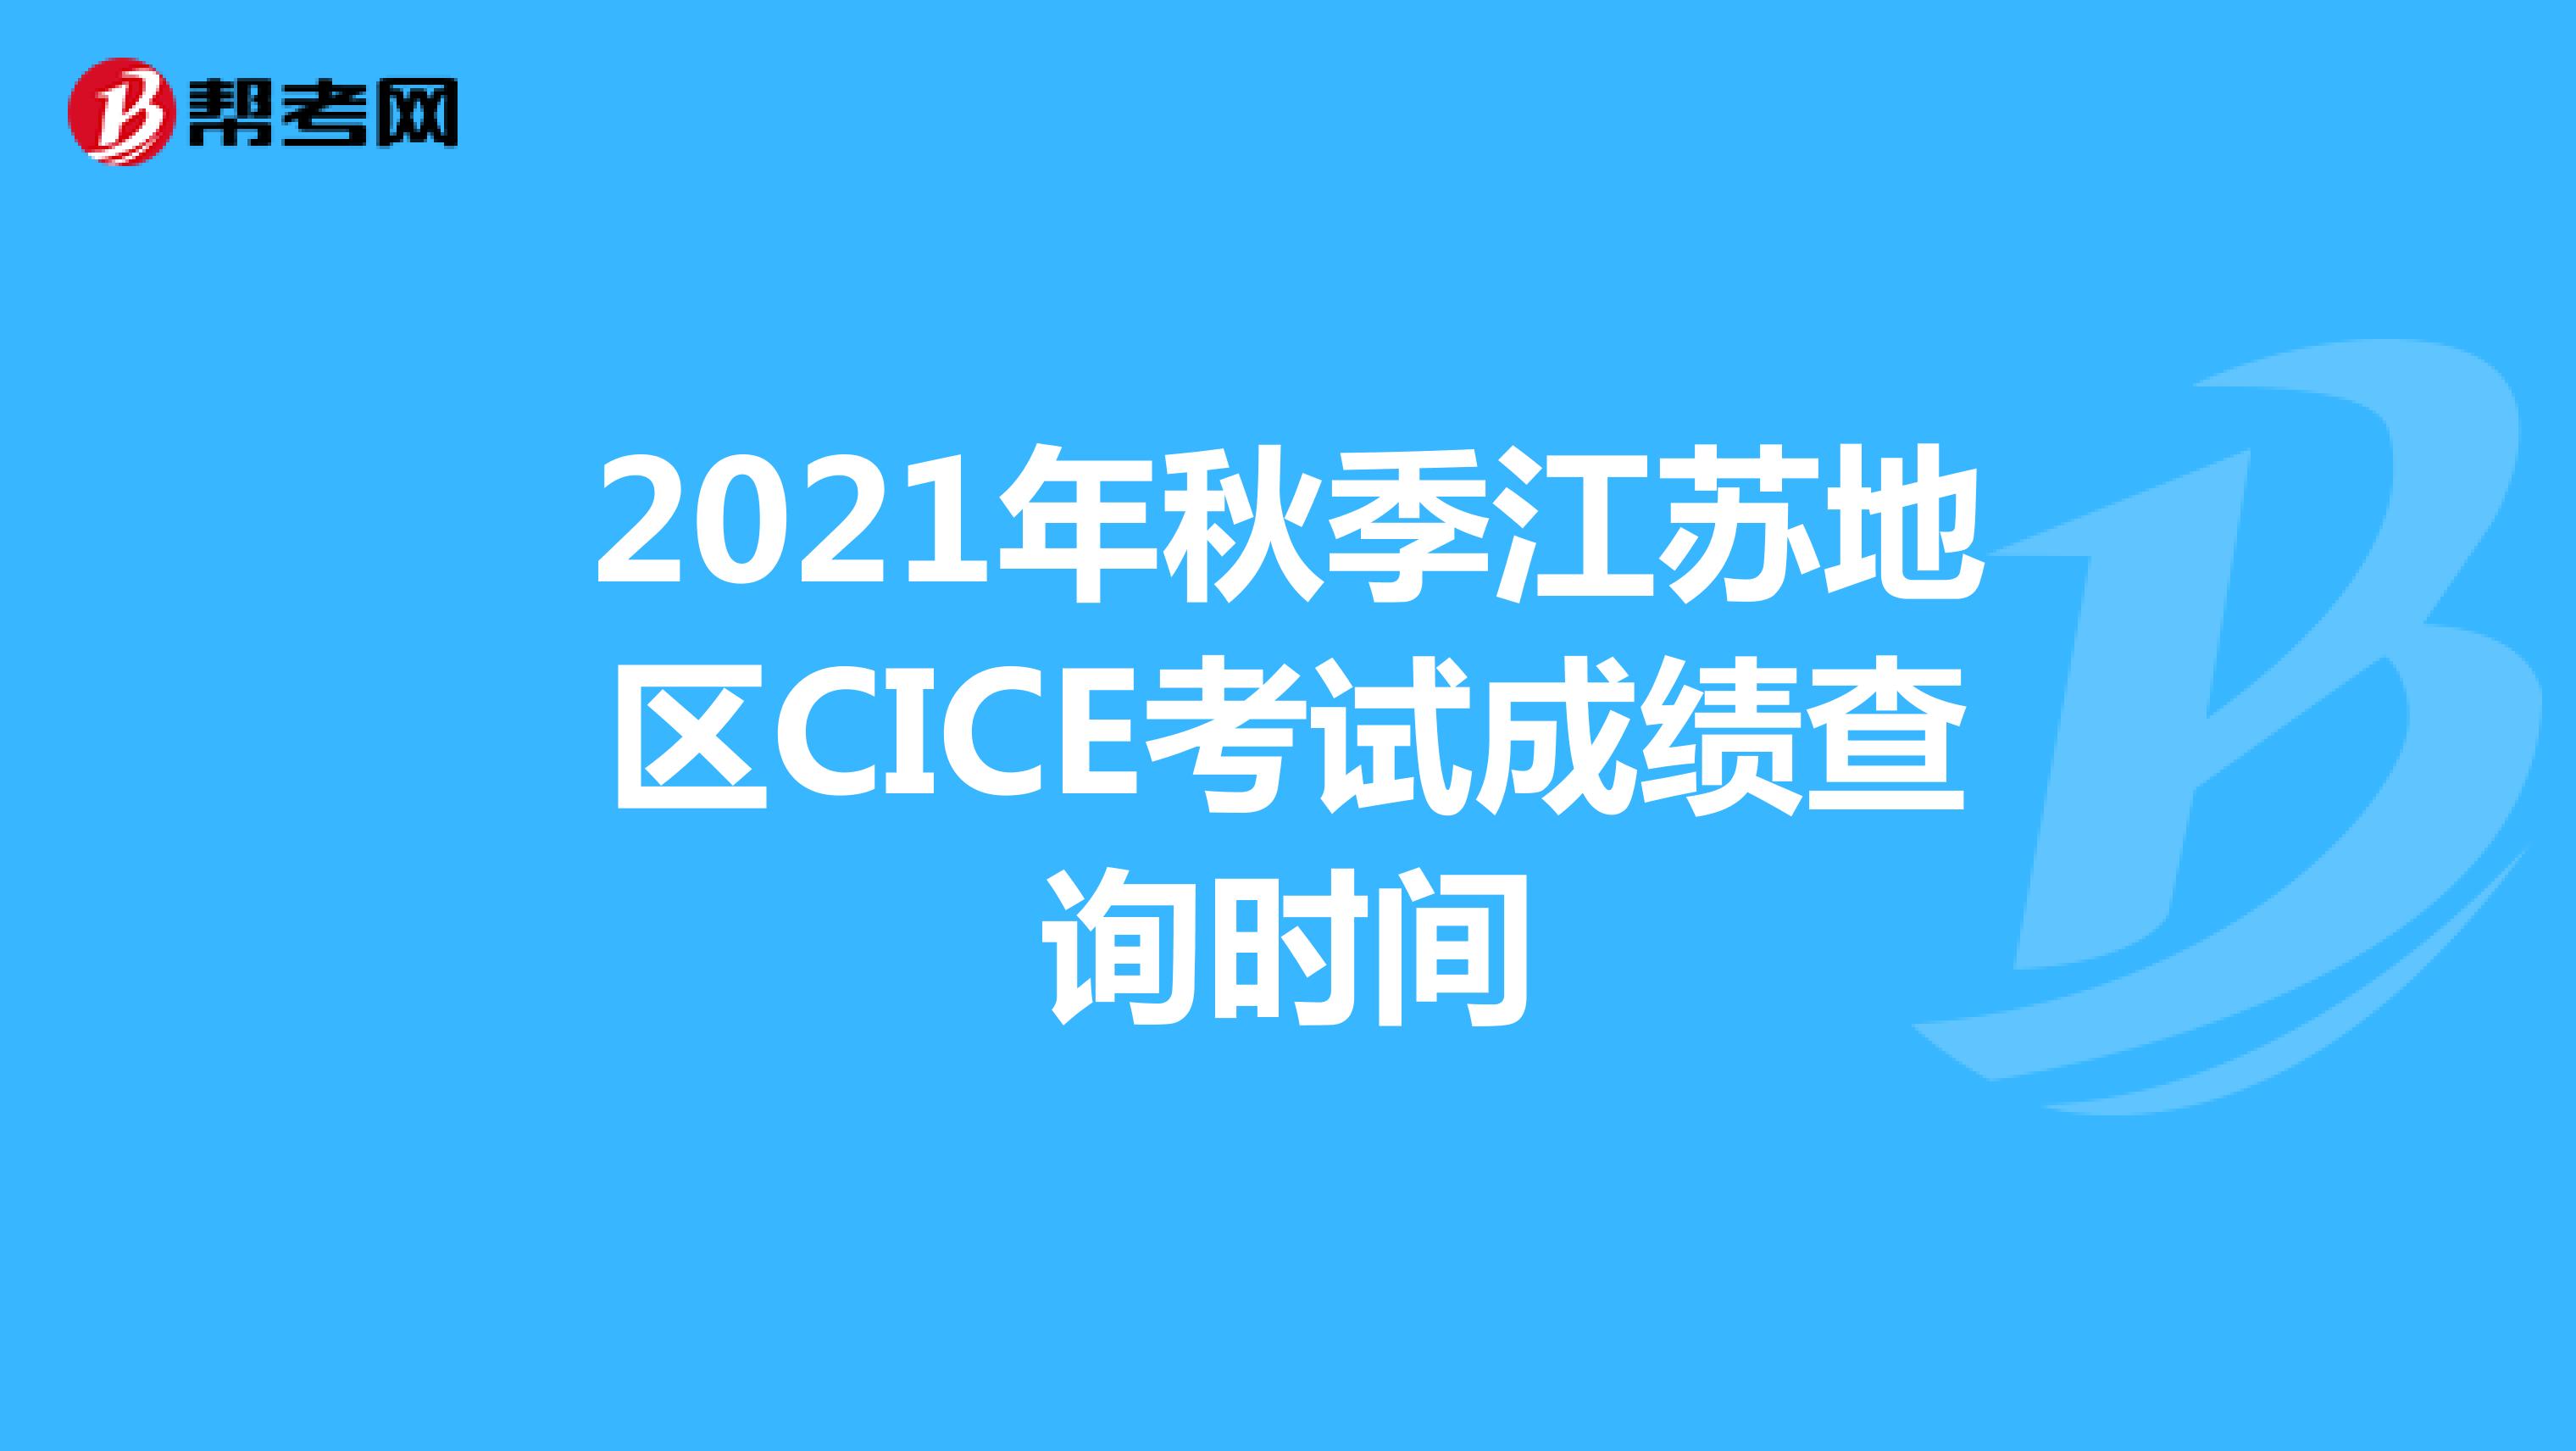 2021年秋季江苏地区CICE考试成绩查询时间